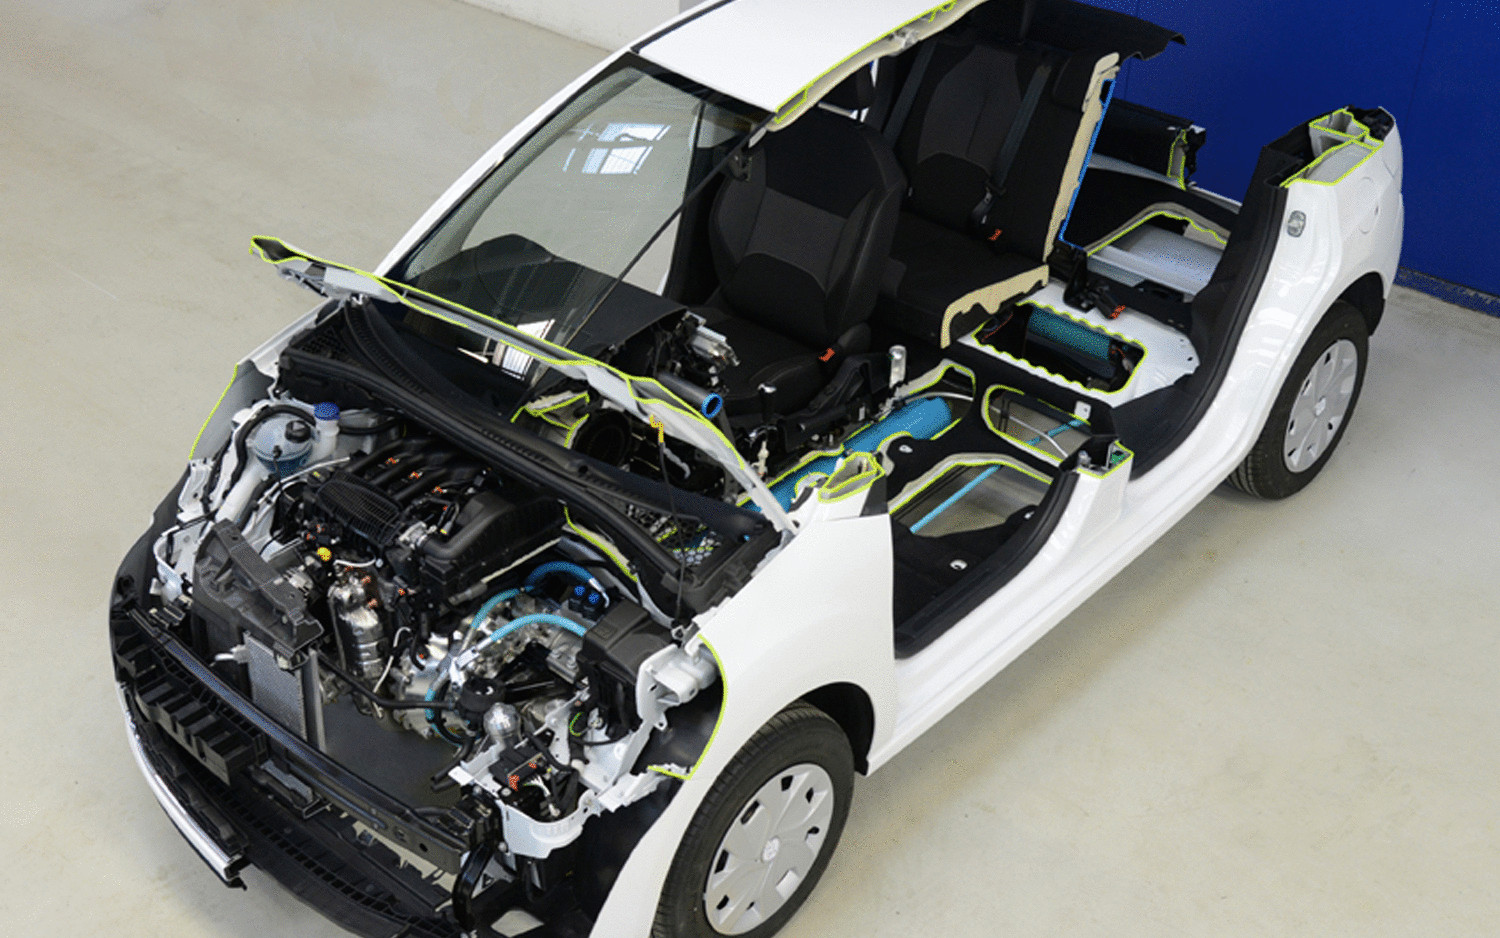 Компания Peugeot представляет автомобиль, использующий сжатый воздух вместо аккумуляторных батарей